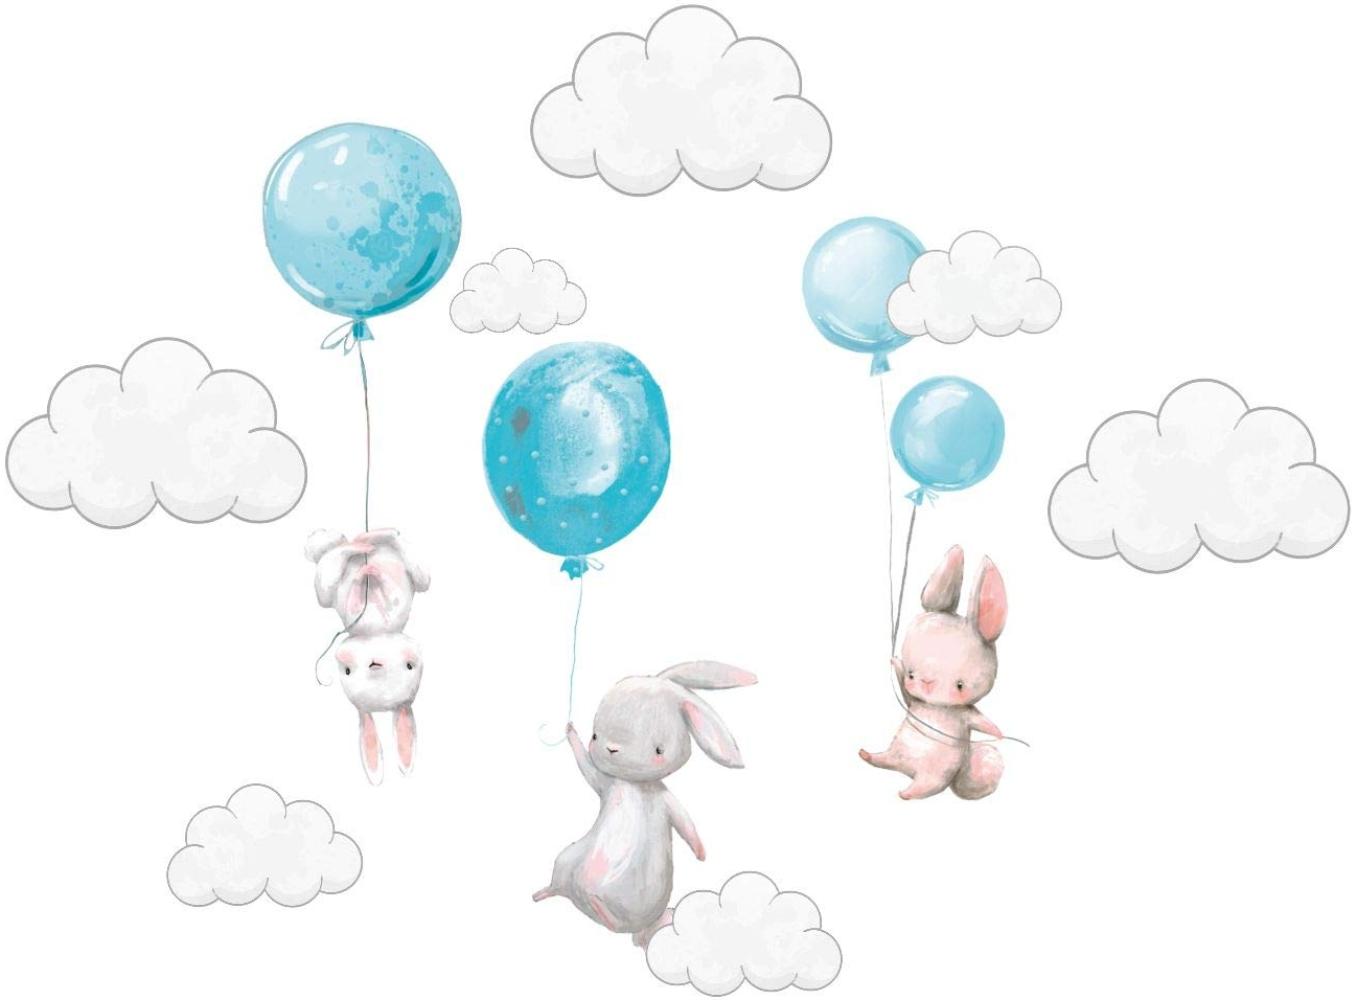 Szeridan Kaninchen Hase Ballons Wolken Wandtattoo Babyzimmer Wandsticker Wandaufkleber Aufkleber Deko für Kinderzimmer Baby Kinder Kinderzimmer Mädchen Junge Dekoration 135 x 160 cm (XXL, Blau) Bild 1